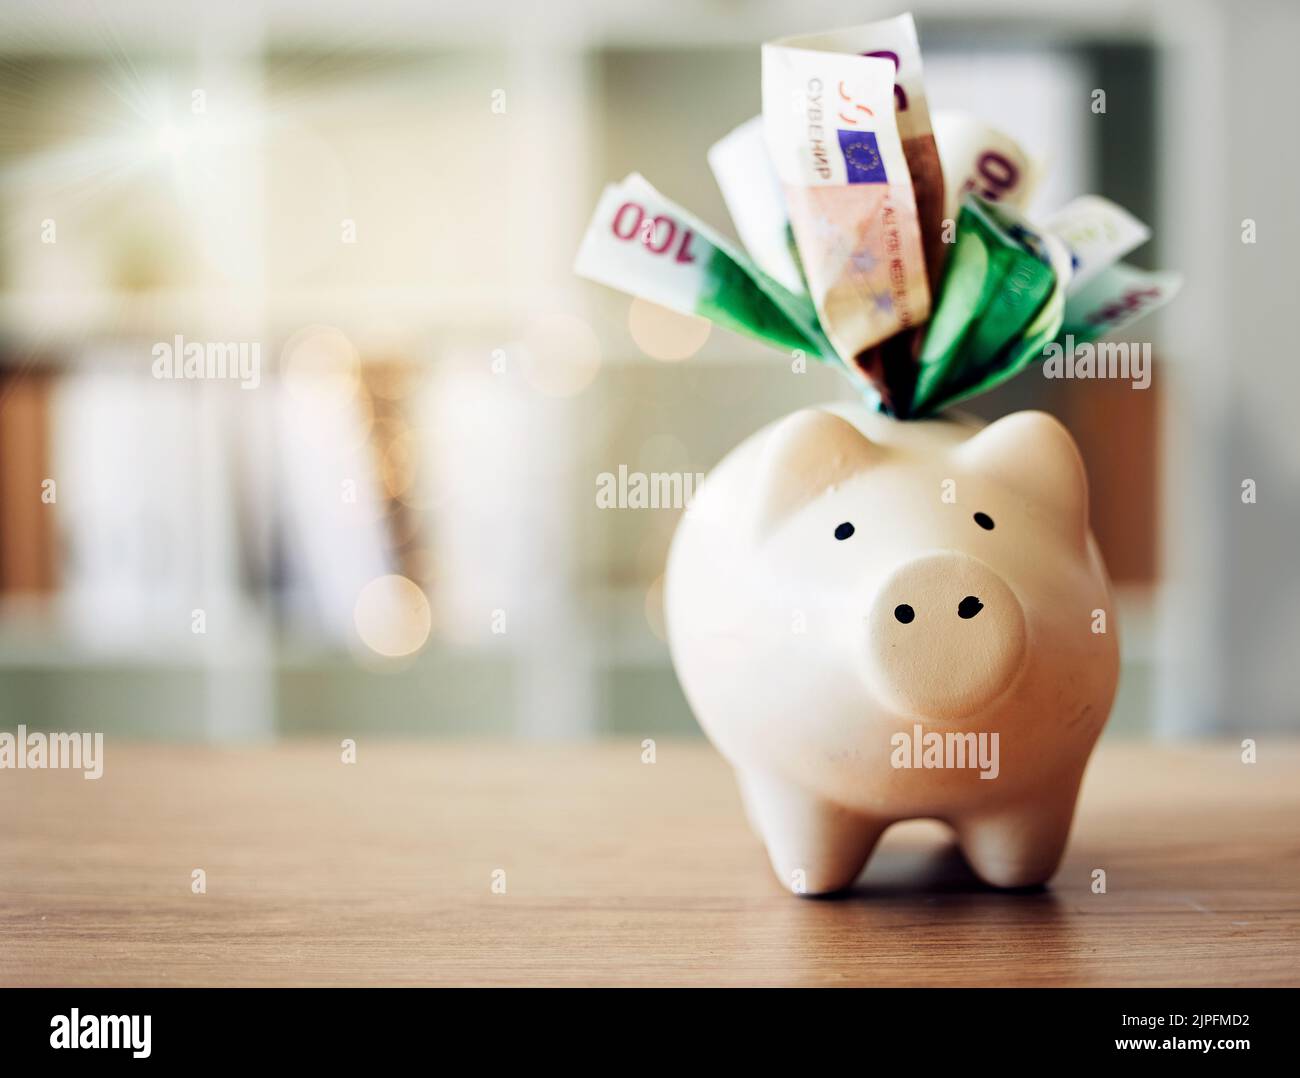 . Bankwesen, Finanzen und Papiergeld in Sparschwein für zukünftige Ersparnisse, Budget und Gewinn auf einem Tisch für Wohlstand. Nahaufnahme eines Instruments zur Einsparung von europäischem Geld Stockfoto